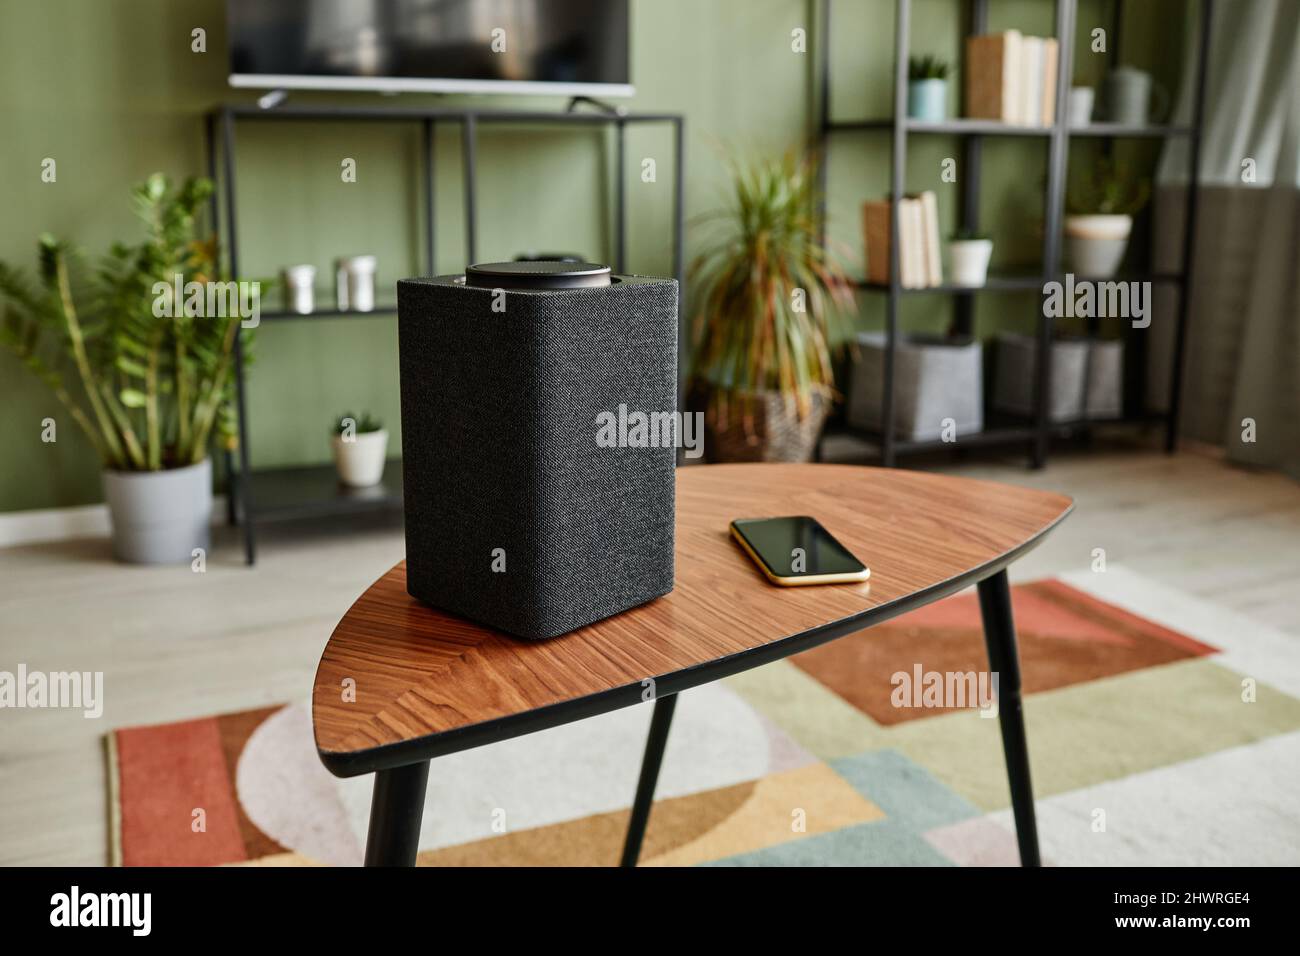 Hintergrundbild von Smart Speaker mit Home AI-System auf Holztisch im modernen Interieur, Kopierraum Stockfoto